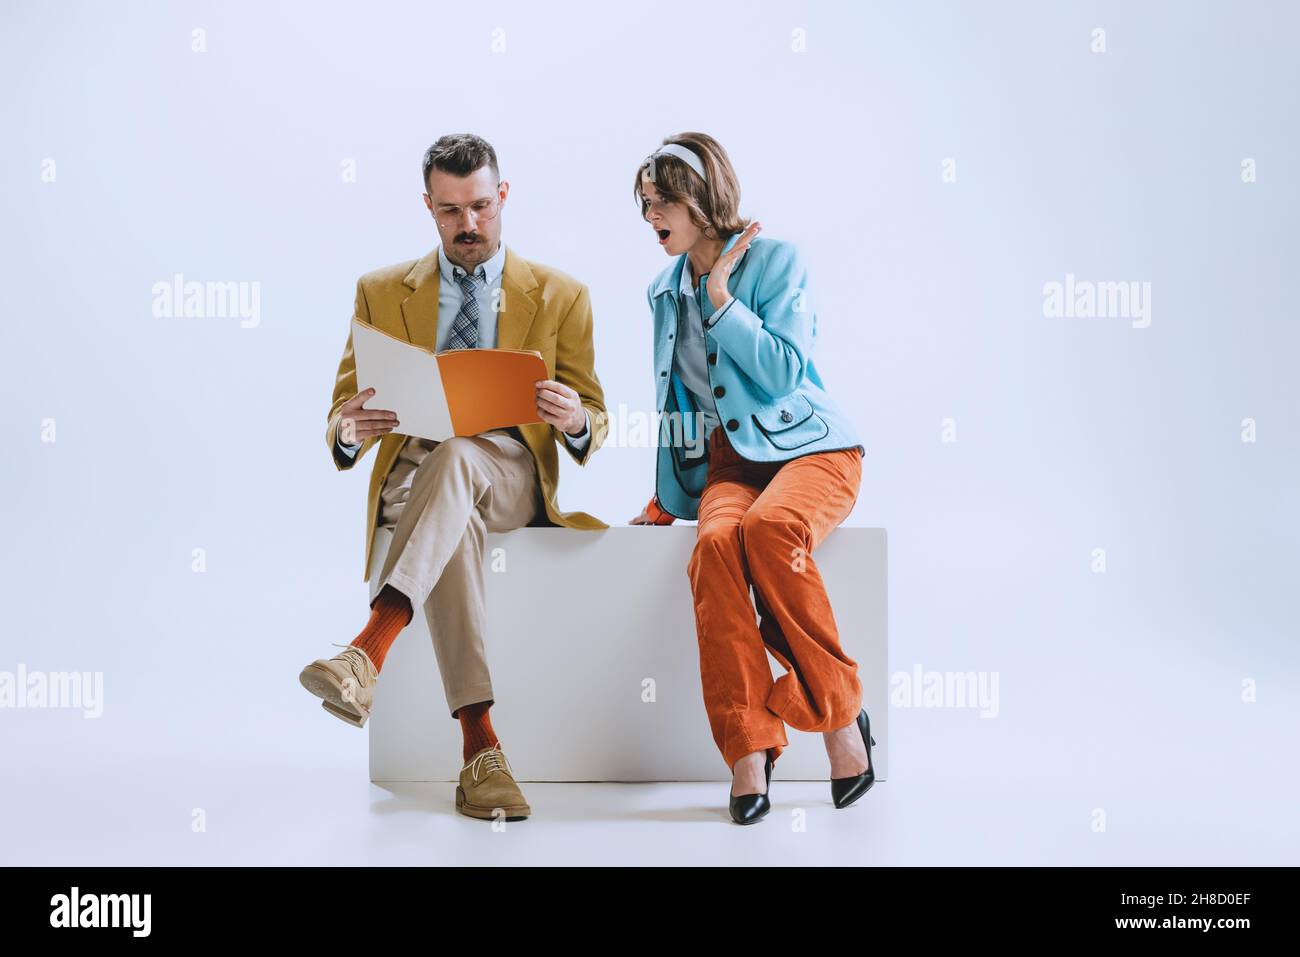 Ritratto di giovane famiglia felice, uomo e donna in stile retrò abiti, moda degli anni '70, sessanta anni seduti insieme isolato su sfondo bianco studio Foto Stock